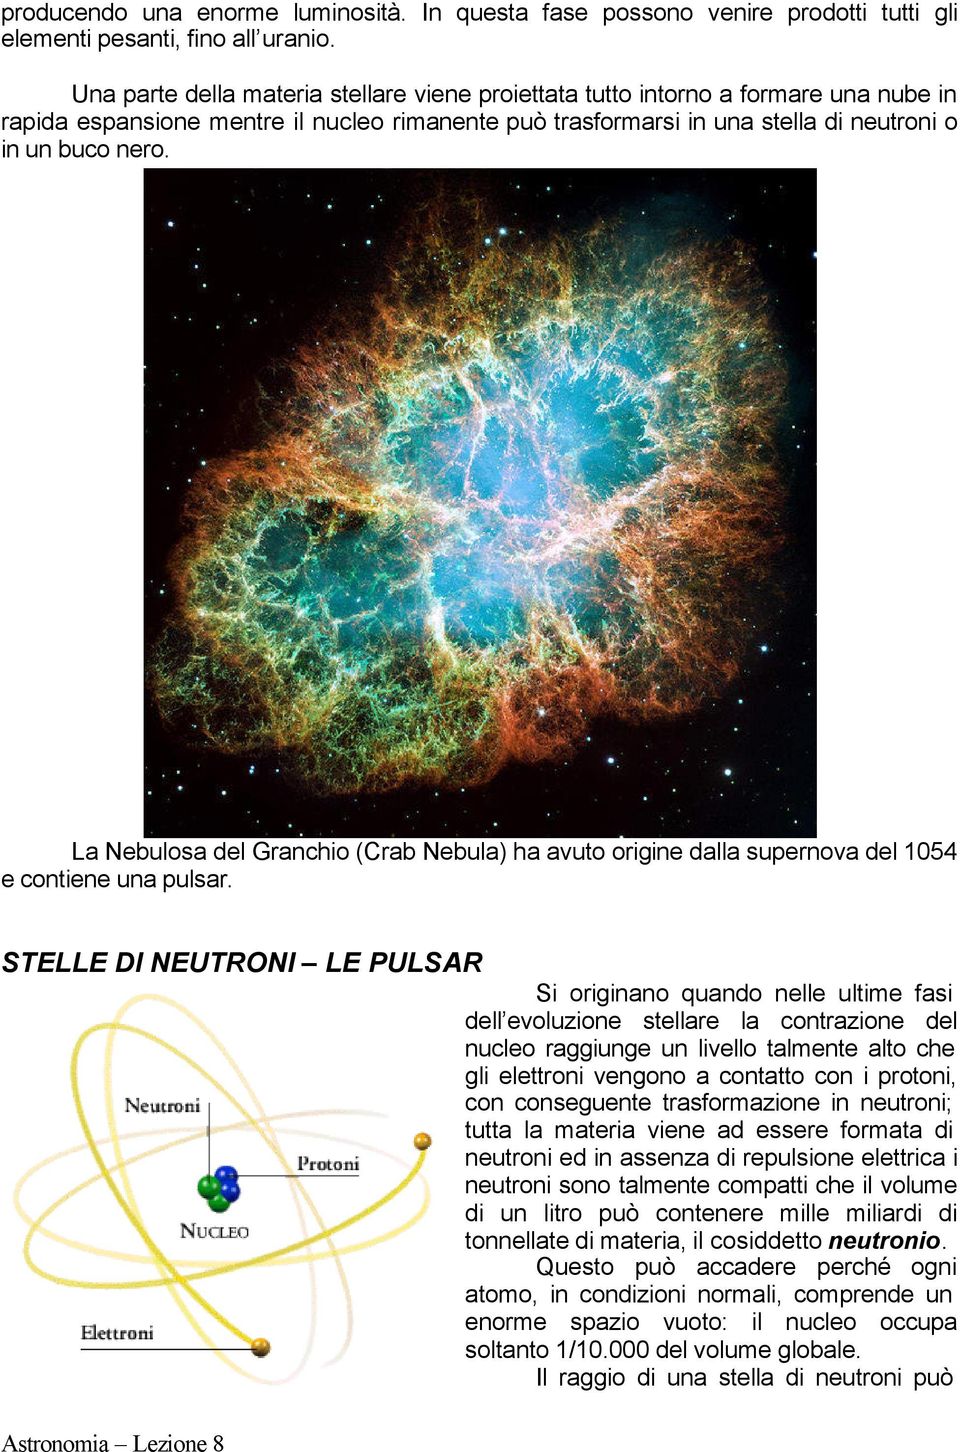 La Nebulosa del Granchio (Crab Nebula) ha avuto origine dalla supernova del 1054 e contiene una pulsar.